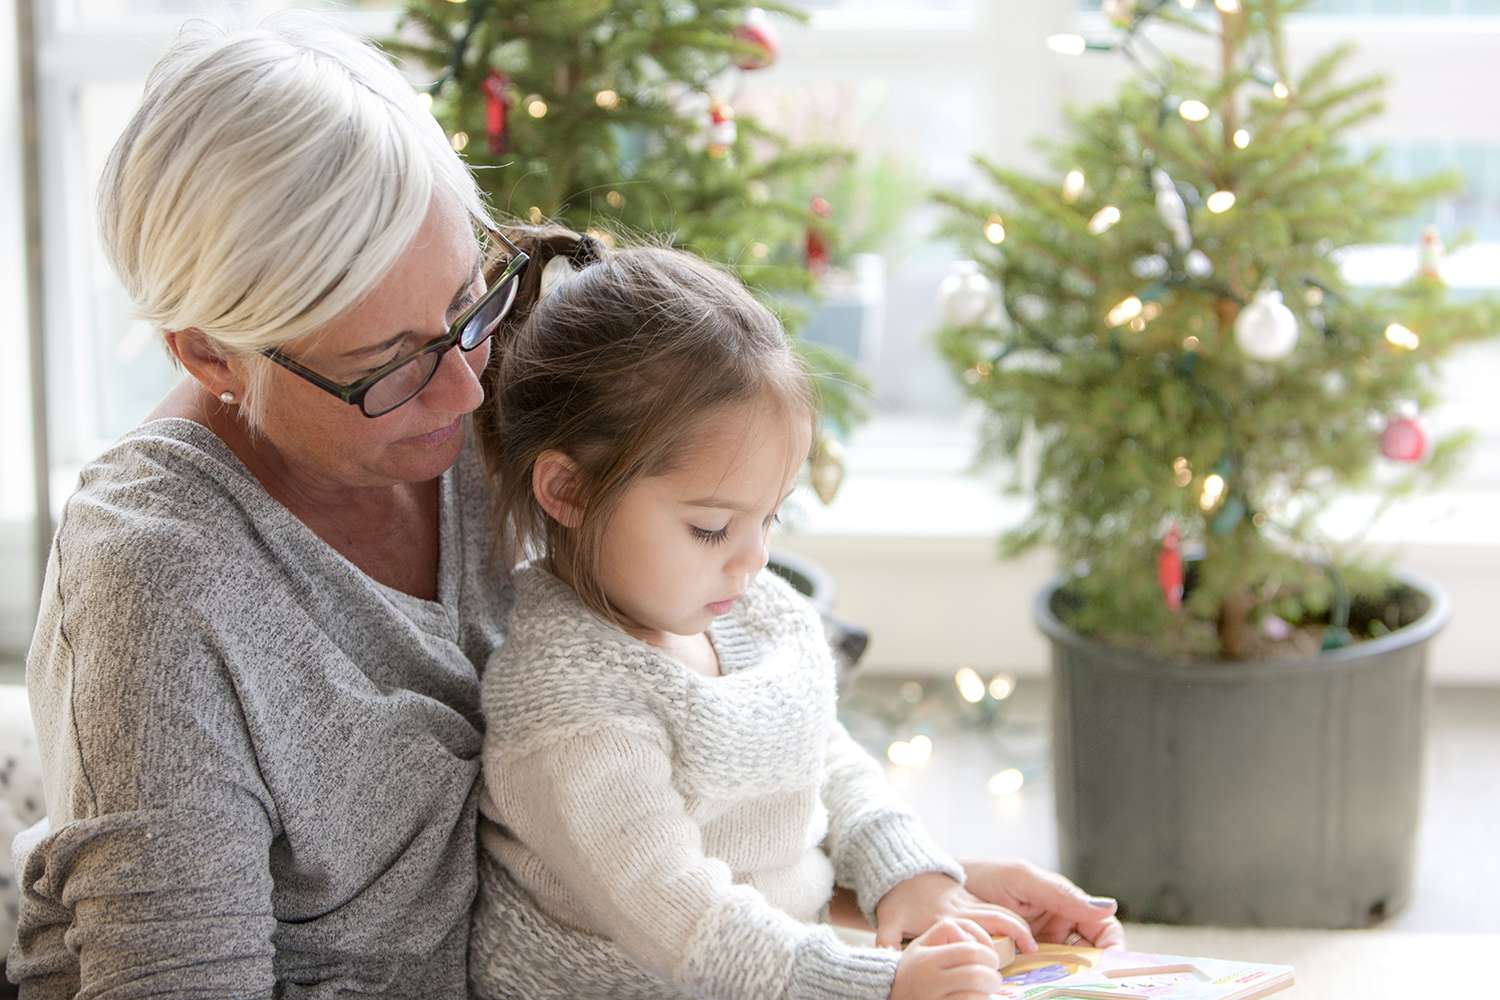 奶奶看着孙女在圣诞树前画画